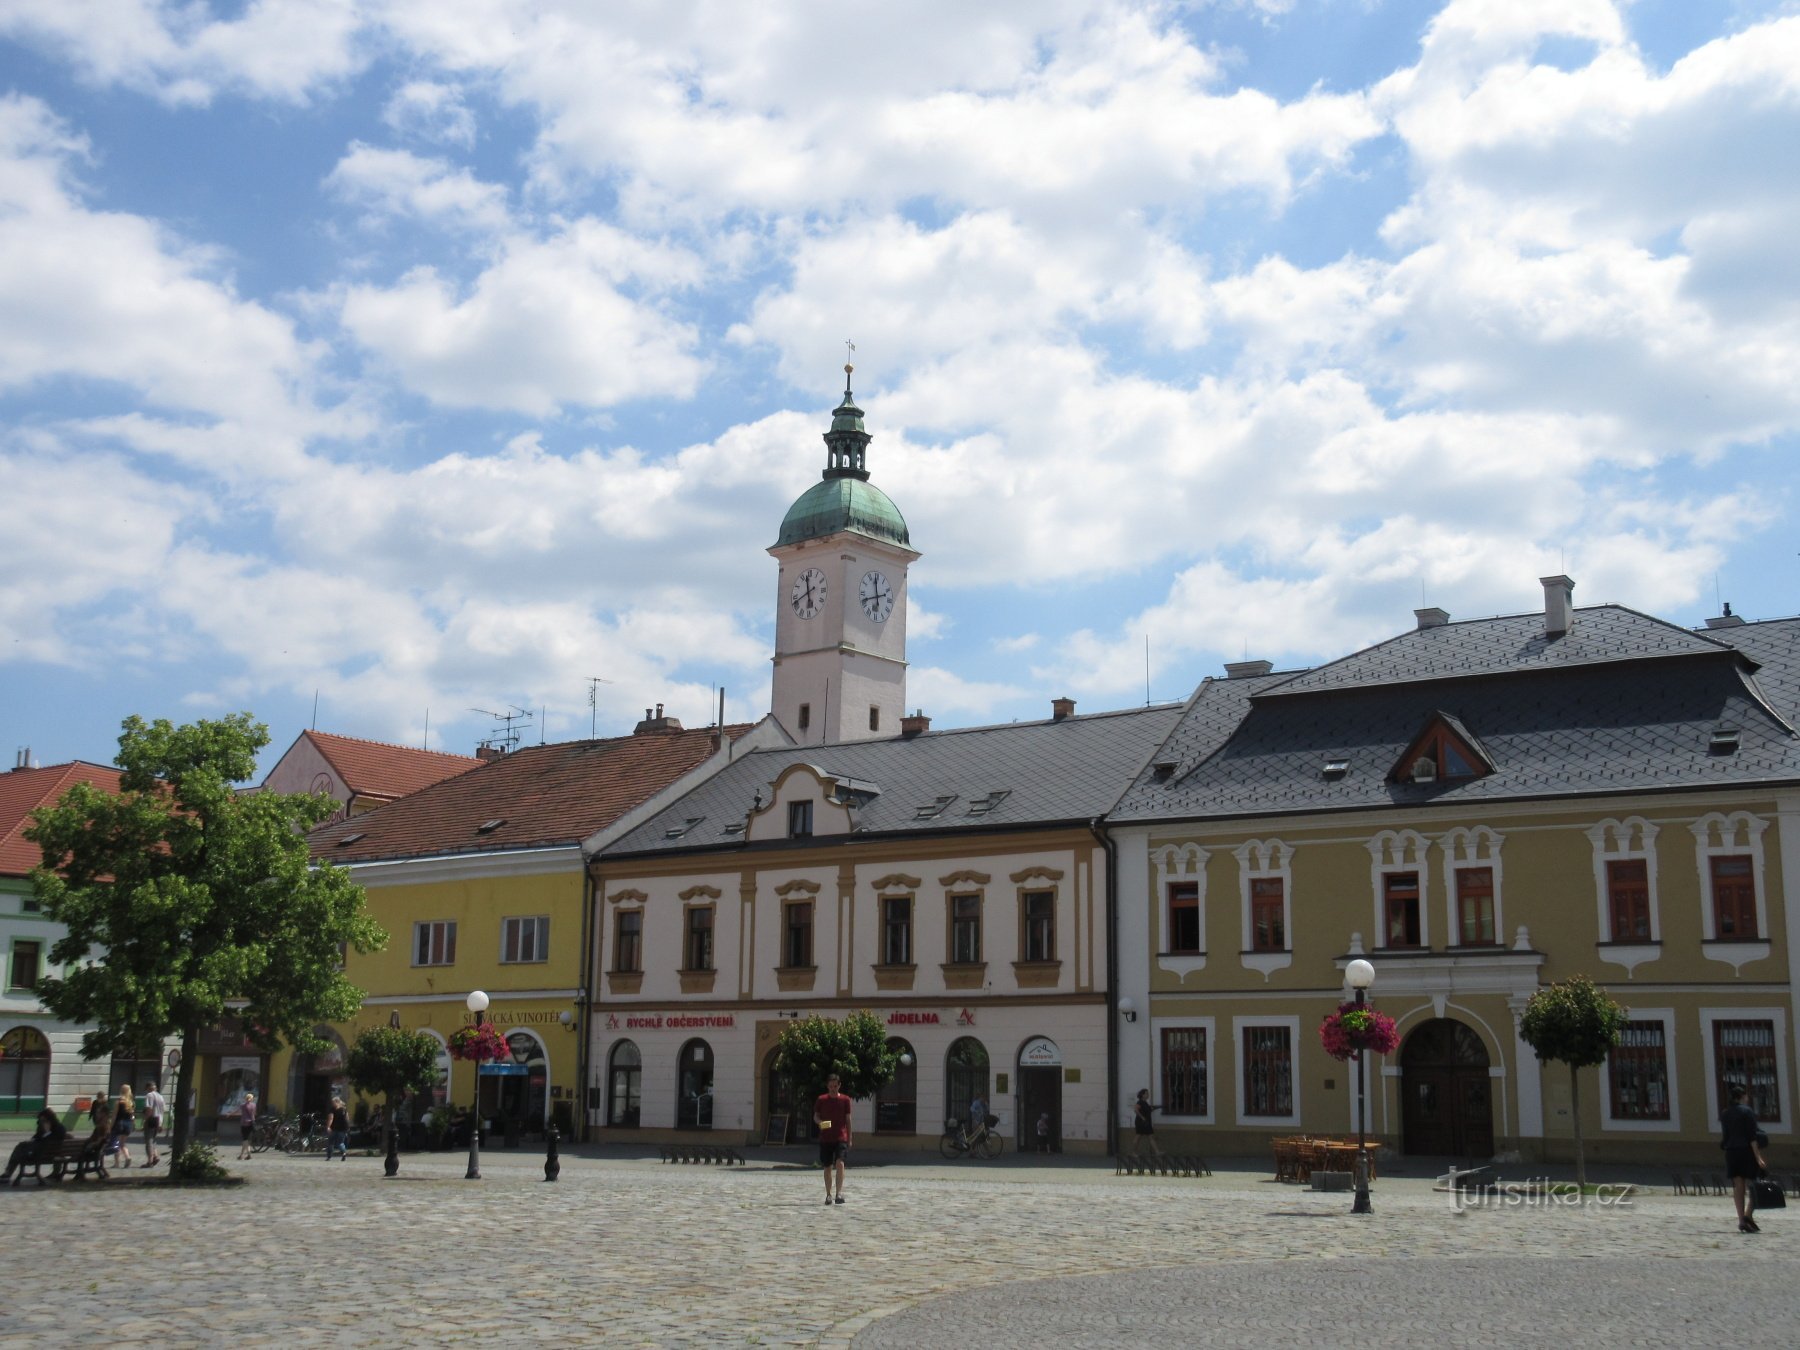 Mariánské náměstí - til højre er huset U Sovy, bag tårnet på det gamle rådhus